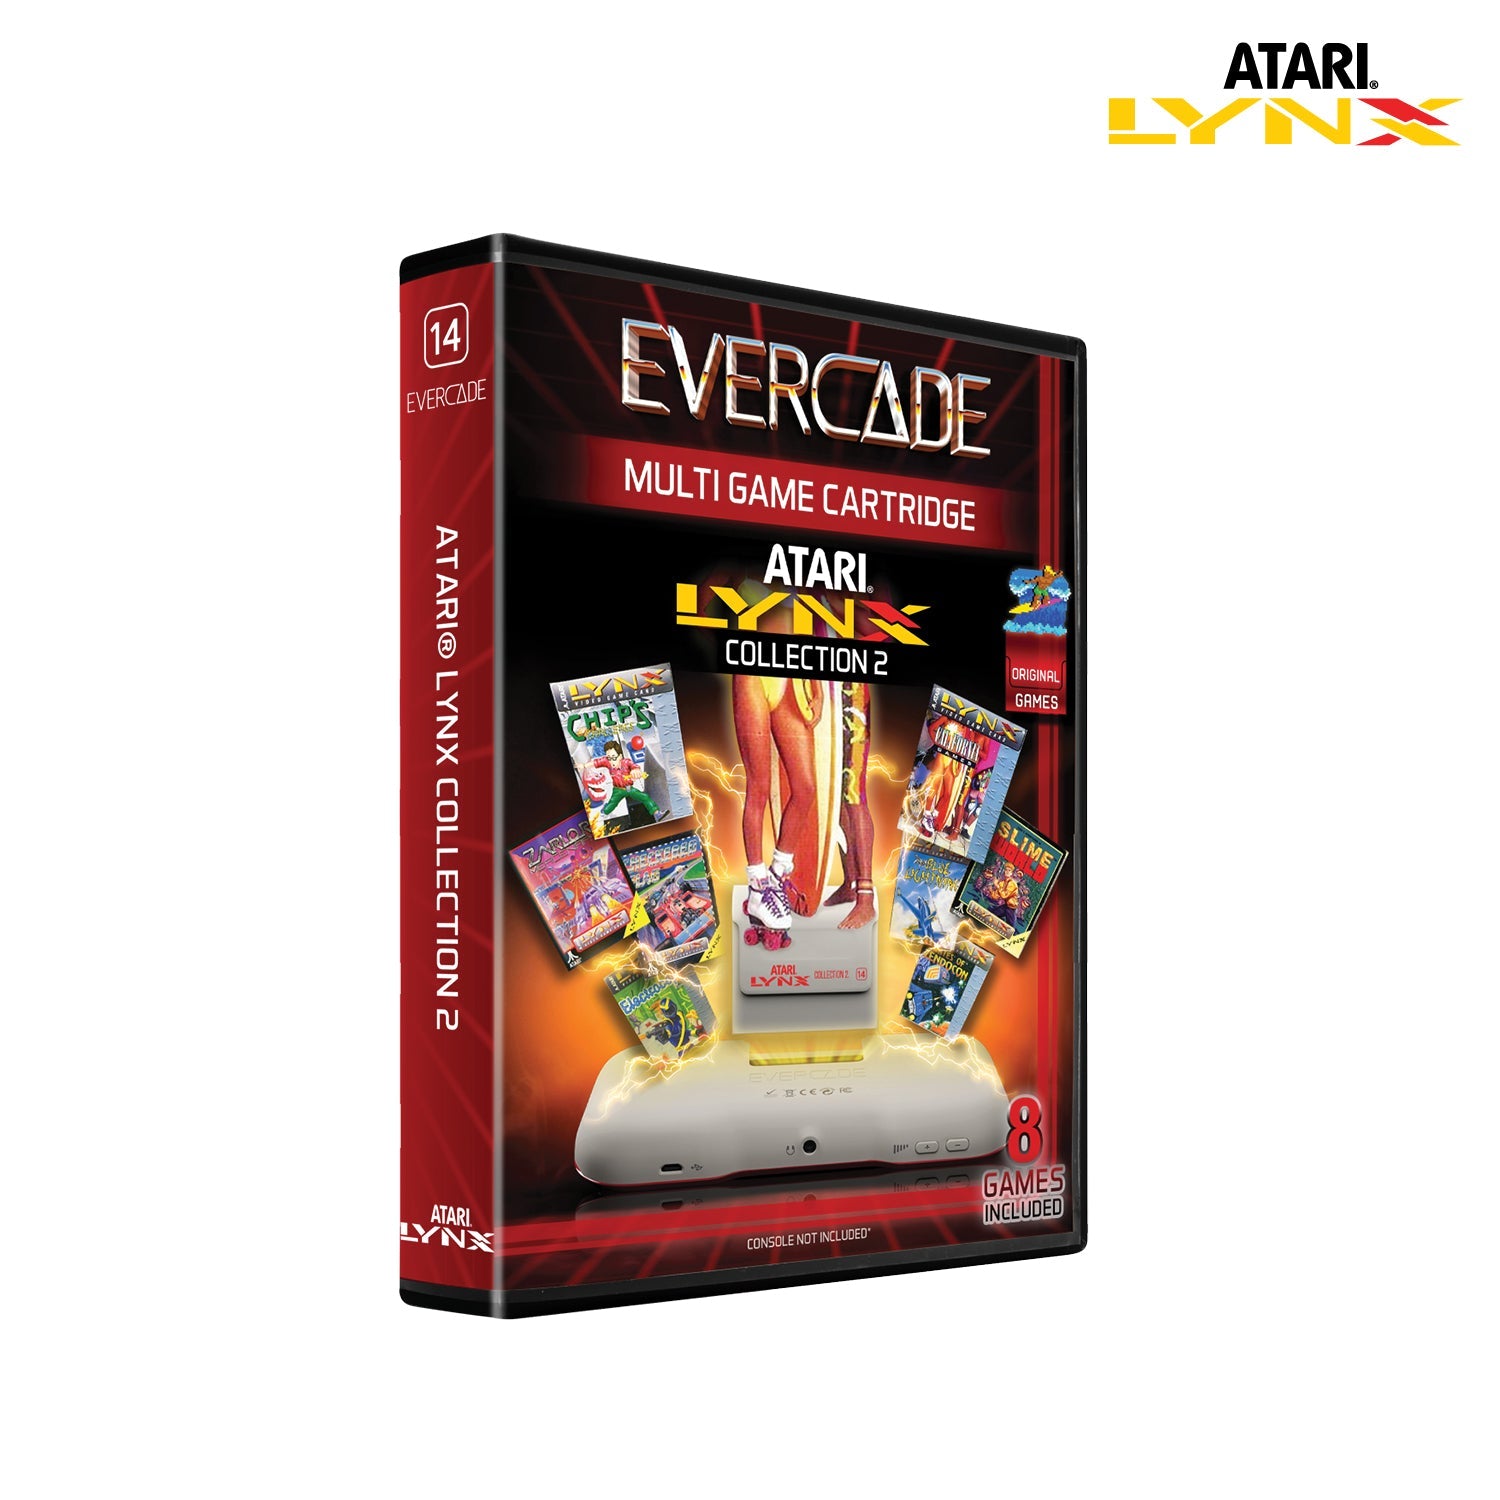 Evercade Atari Lynx Collection 2 - CastleMania Games